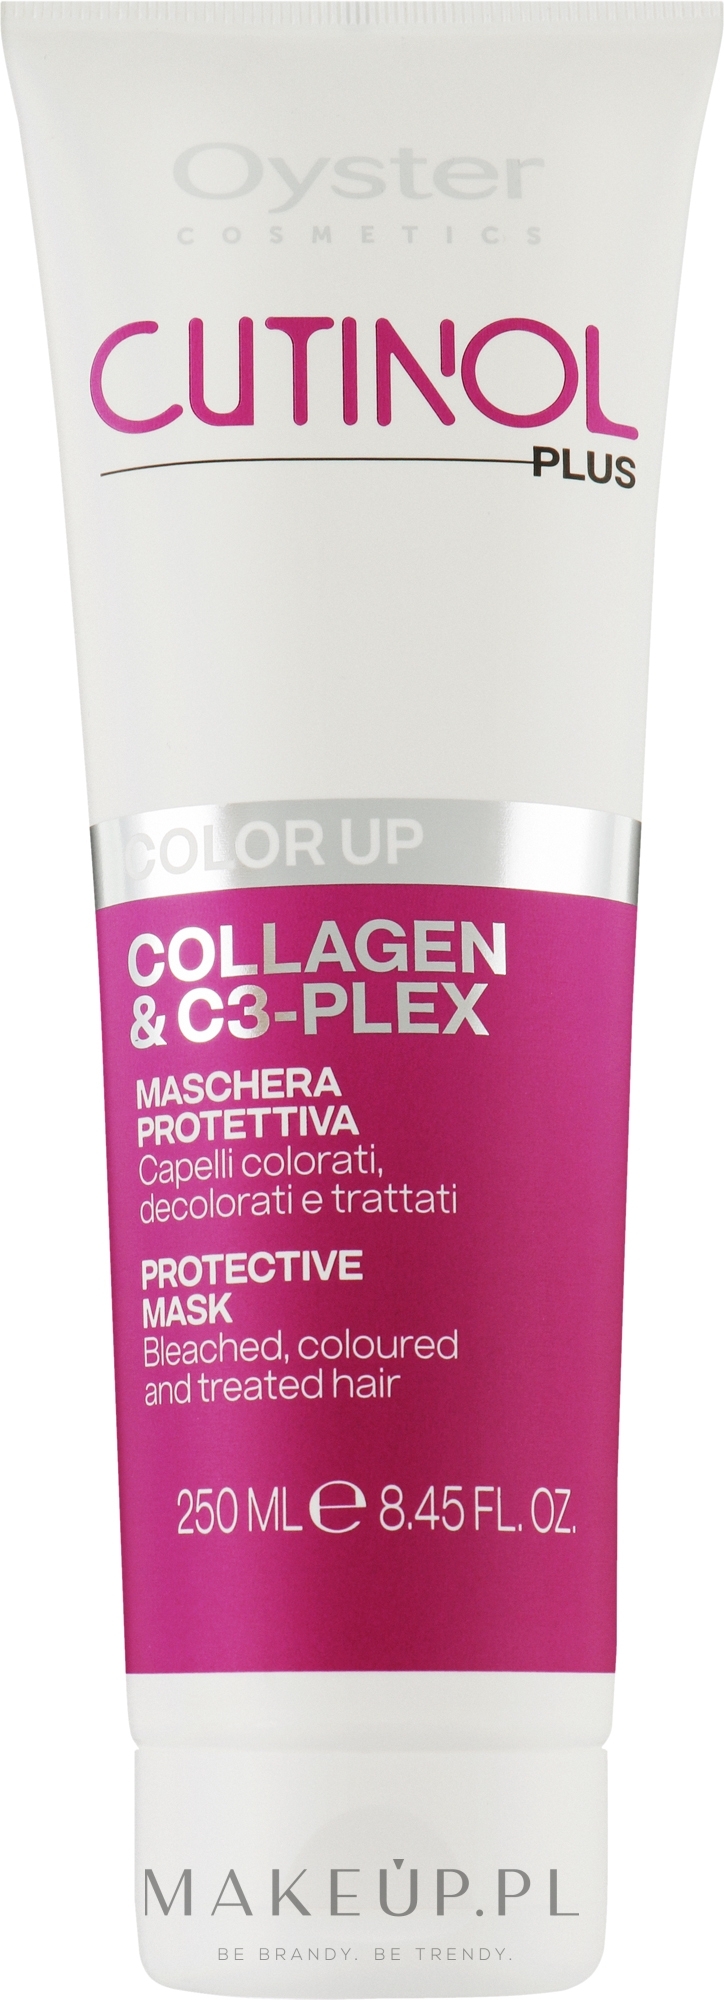 Maska do włosów farbowanych - Oyster Cutinol Plus Collagen & C3-Plex Color Up Protective Mask — Zdjęcie 250 ml